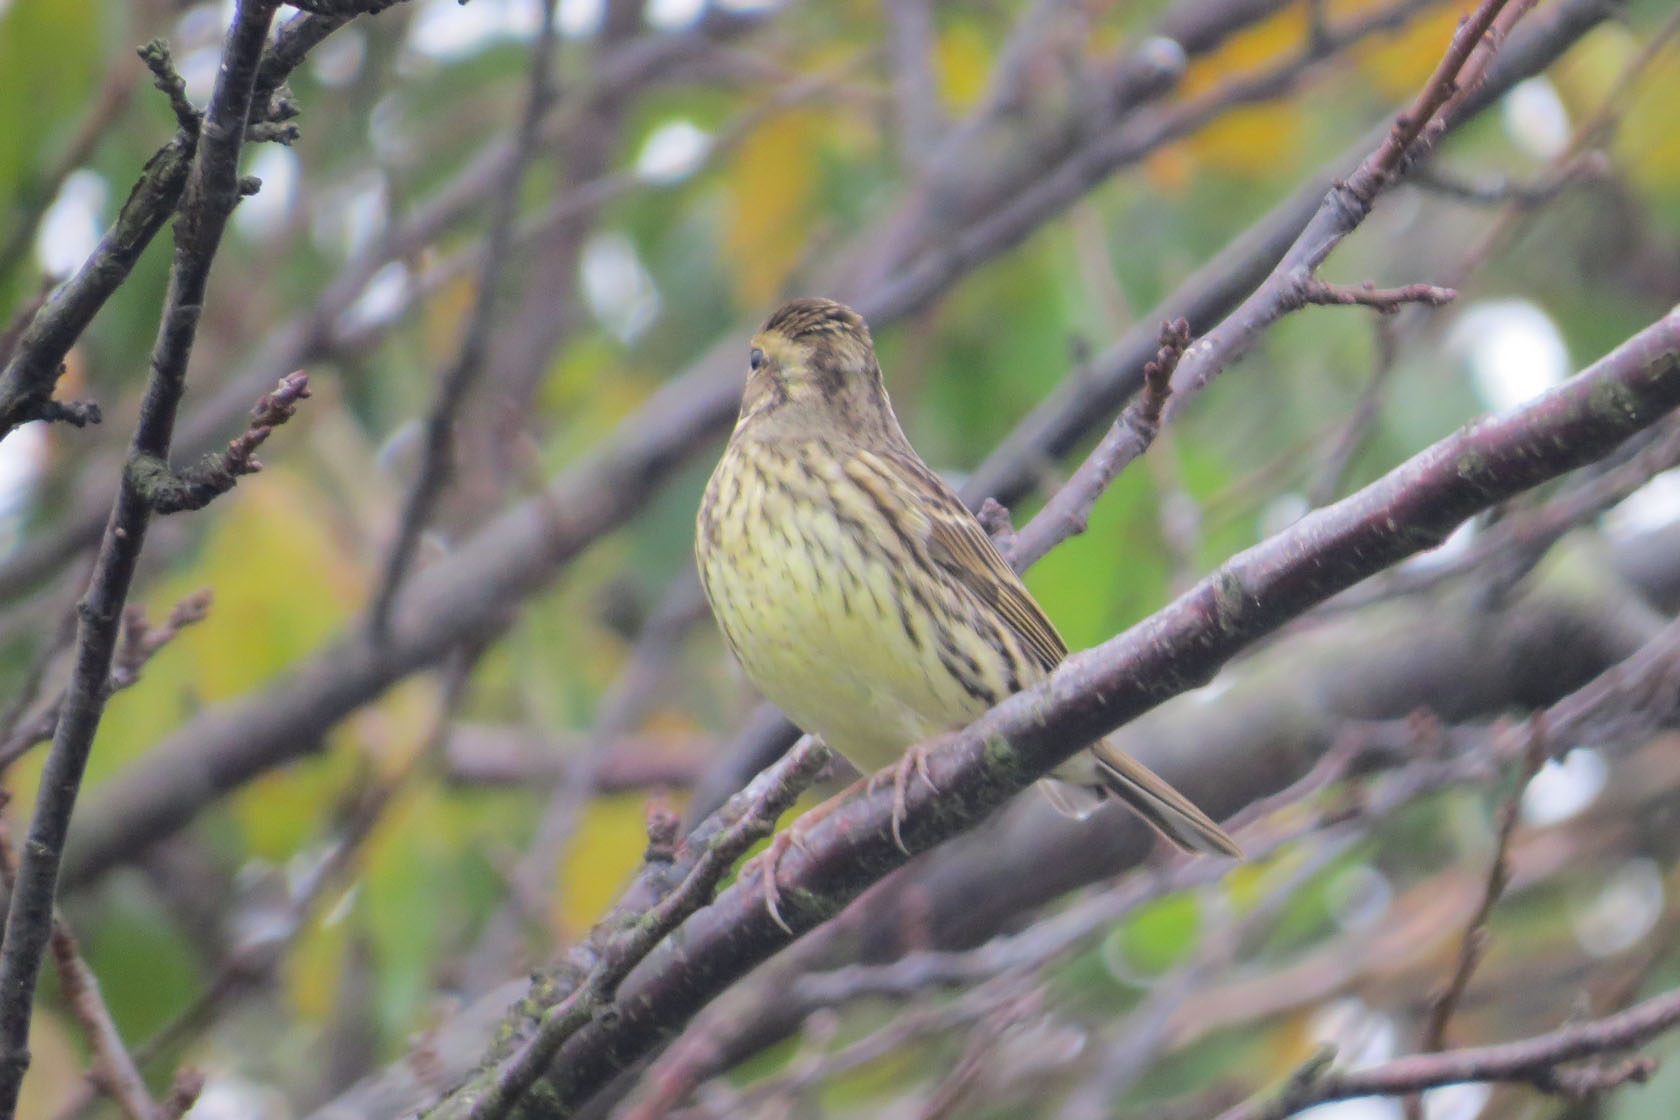 アオジ 黄緑色のお腹がよく分かる みどりの鳥 横浜市北部 緑区周辺の野鳥紹介